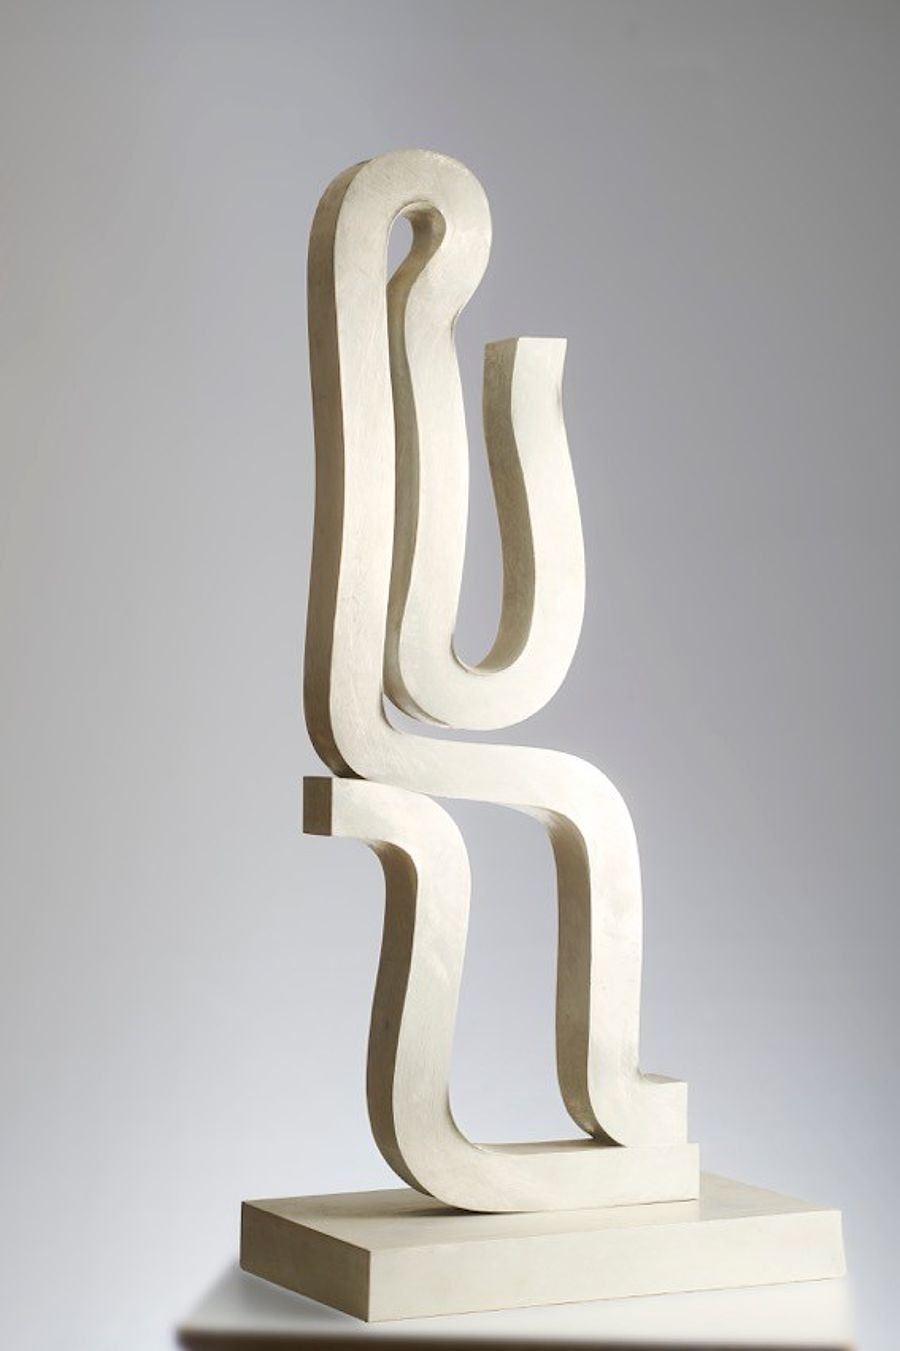 Korff Stiftung - Joannis Avramidis - Sculptures - Kleine sitzende Bandfigur